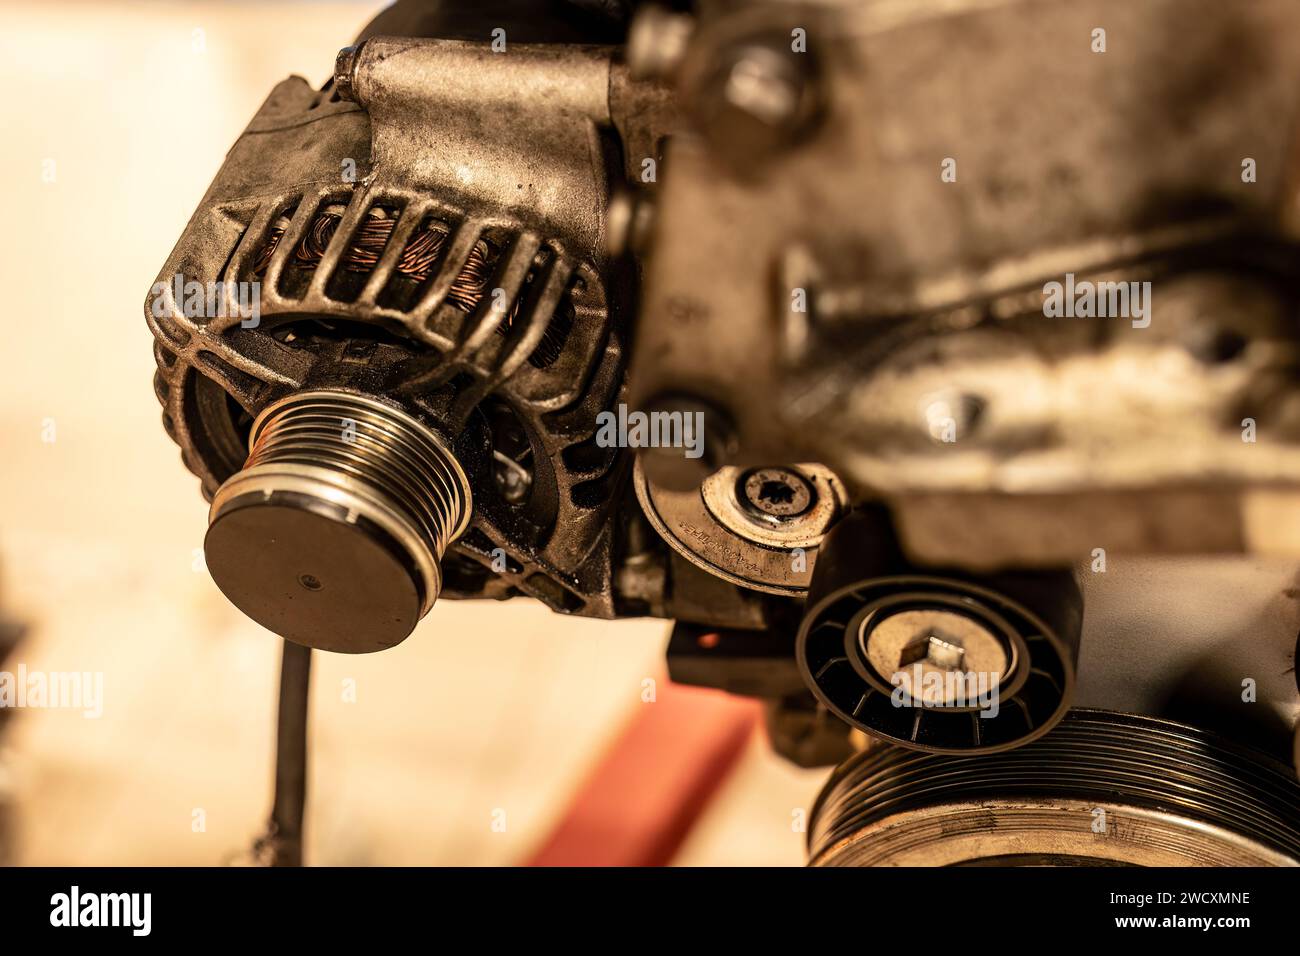 Image détaillée d'une poulie d'alternateur attachée à un moteur de voiture, montrant des pièces mécaniques complexes. Banque D'Images